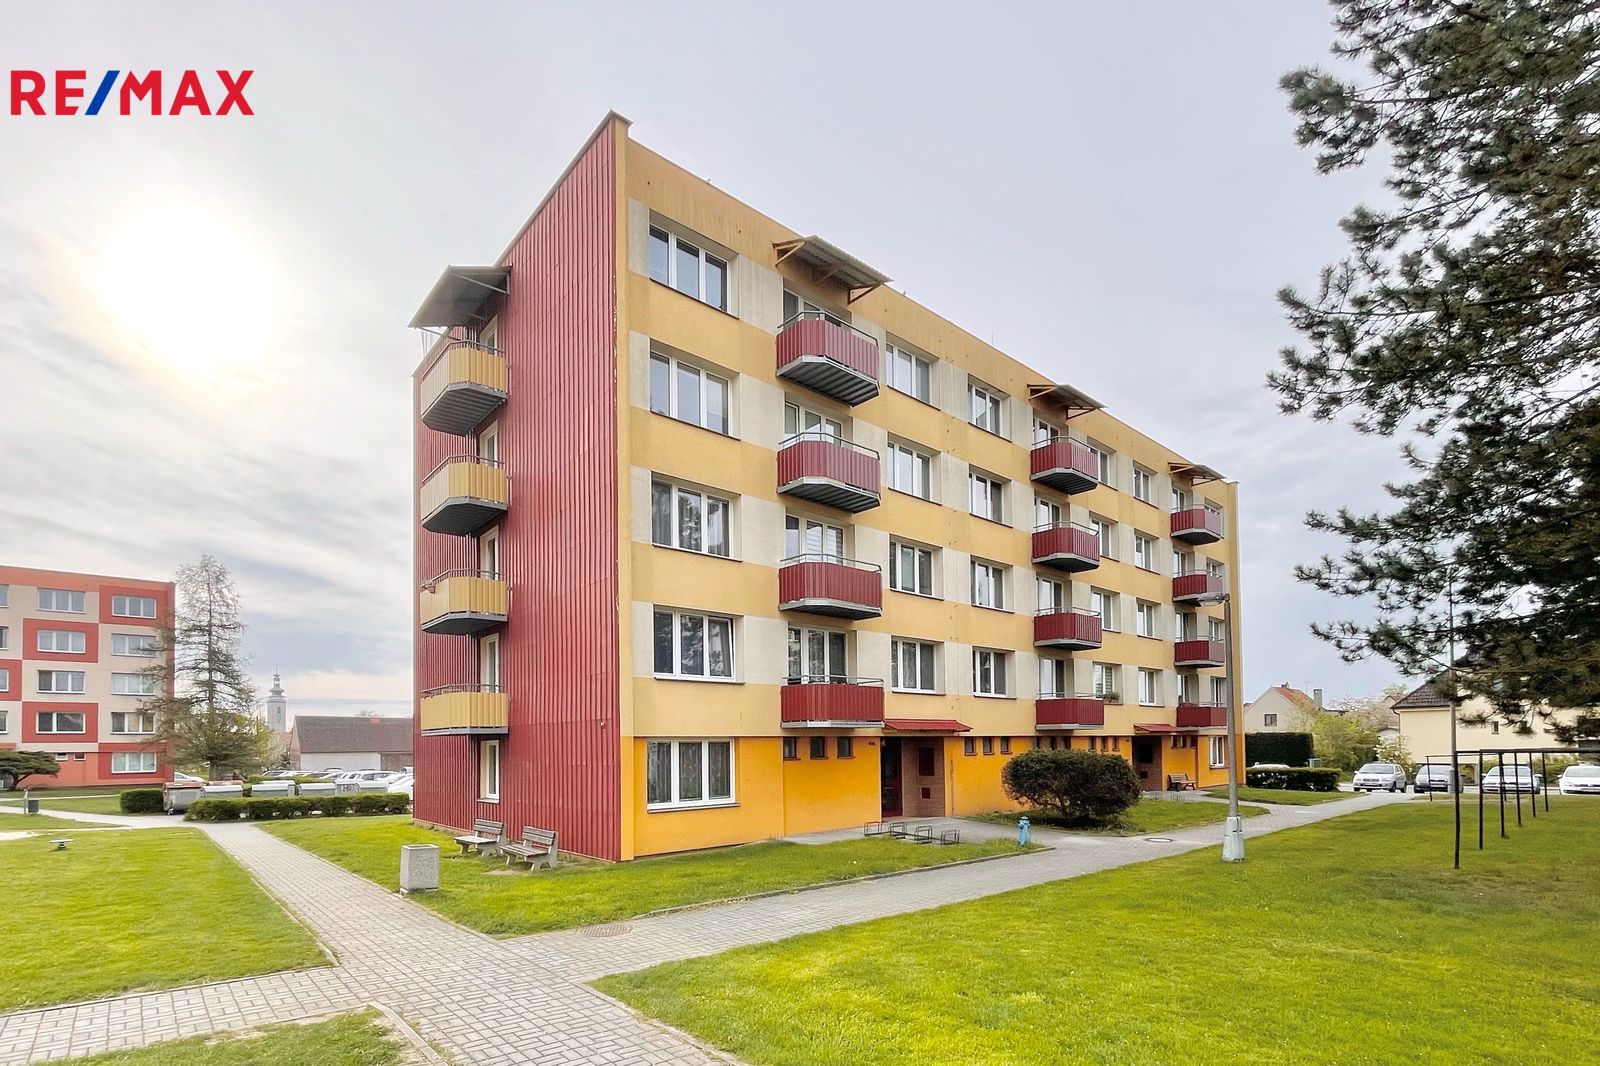 Prodej bytu 1+1 v osobním vlastnictví, 35 m2, Soběslav